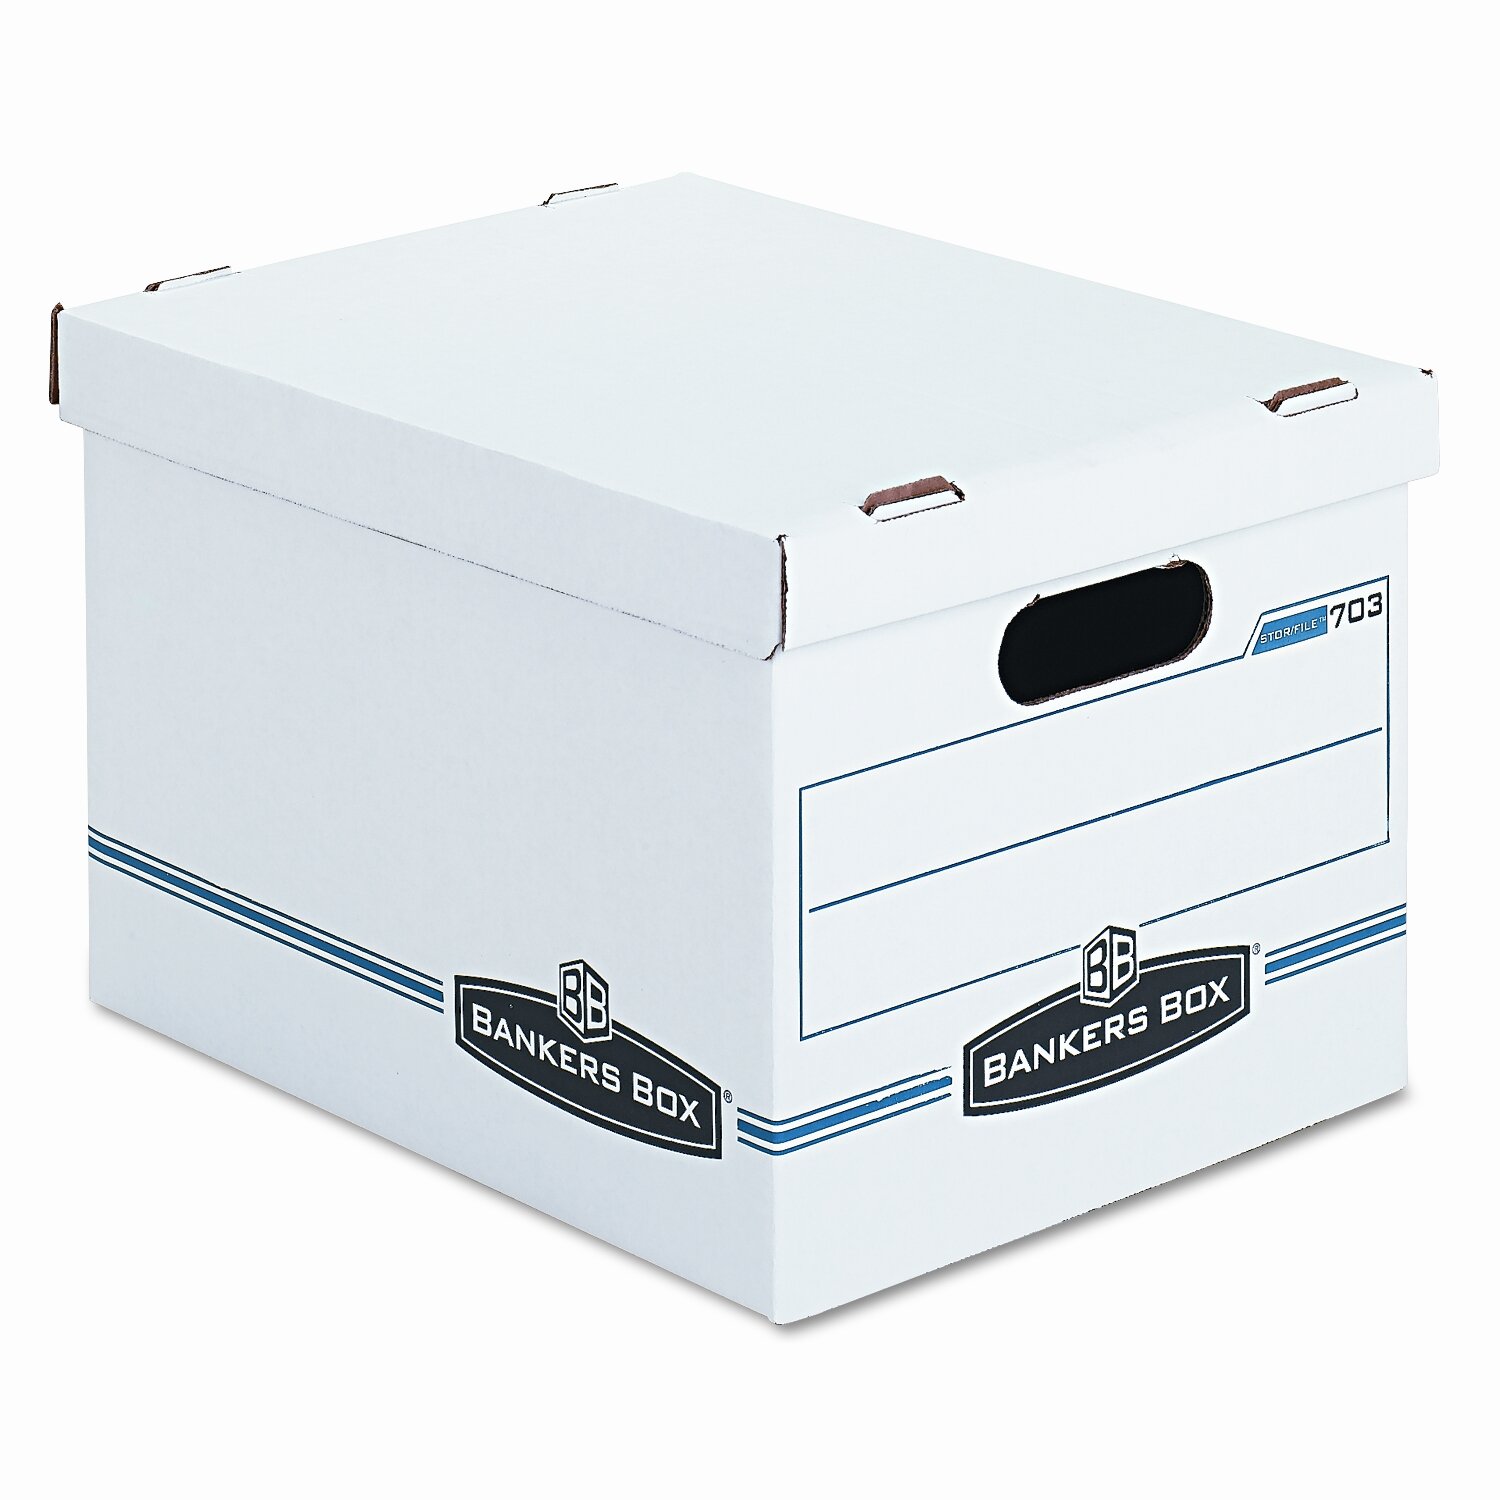 15 x 12 x 10 Economy File Storage Boxes 12/Bundle